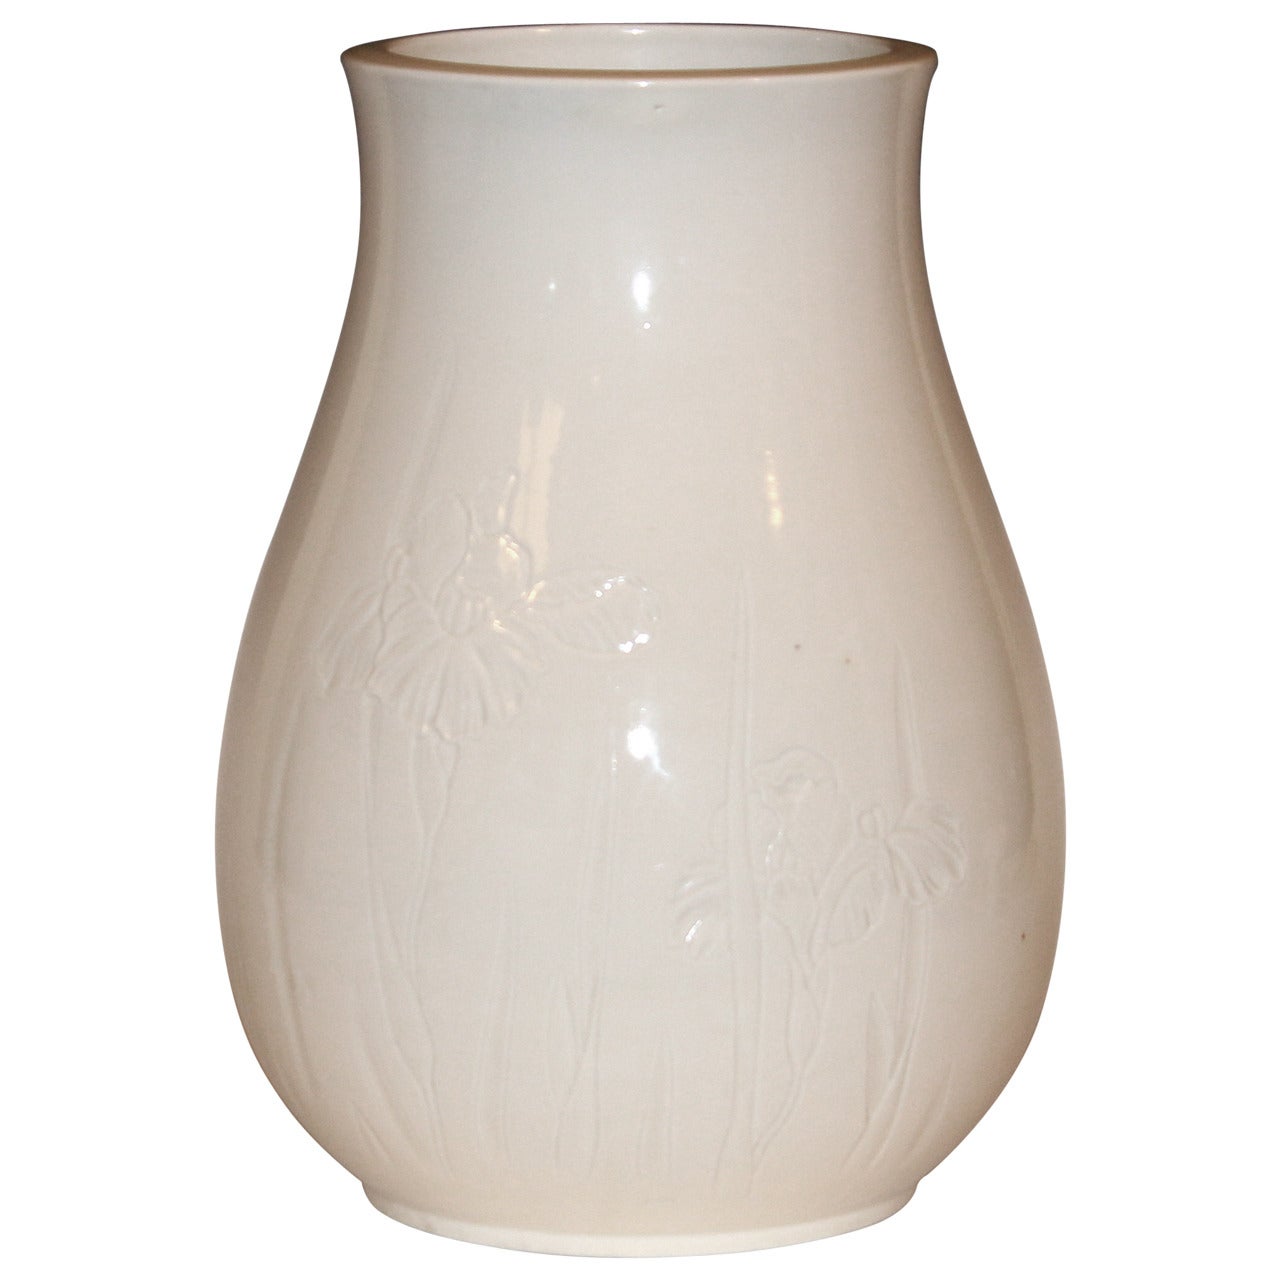 Antique Japanese Carved Studio Blanc de Chine Porcelain Vase